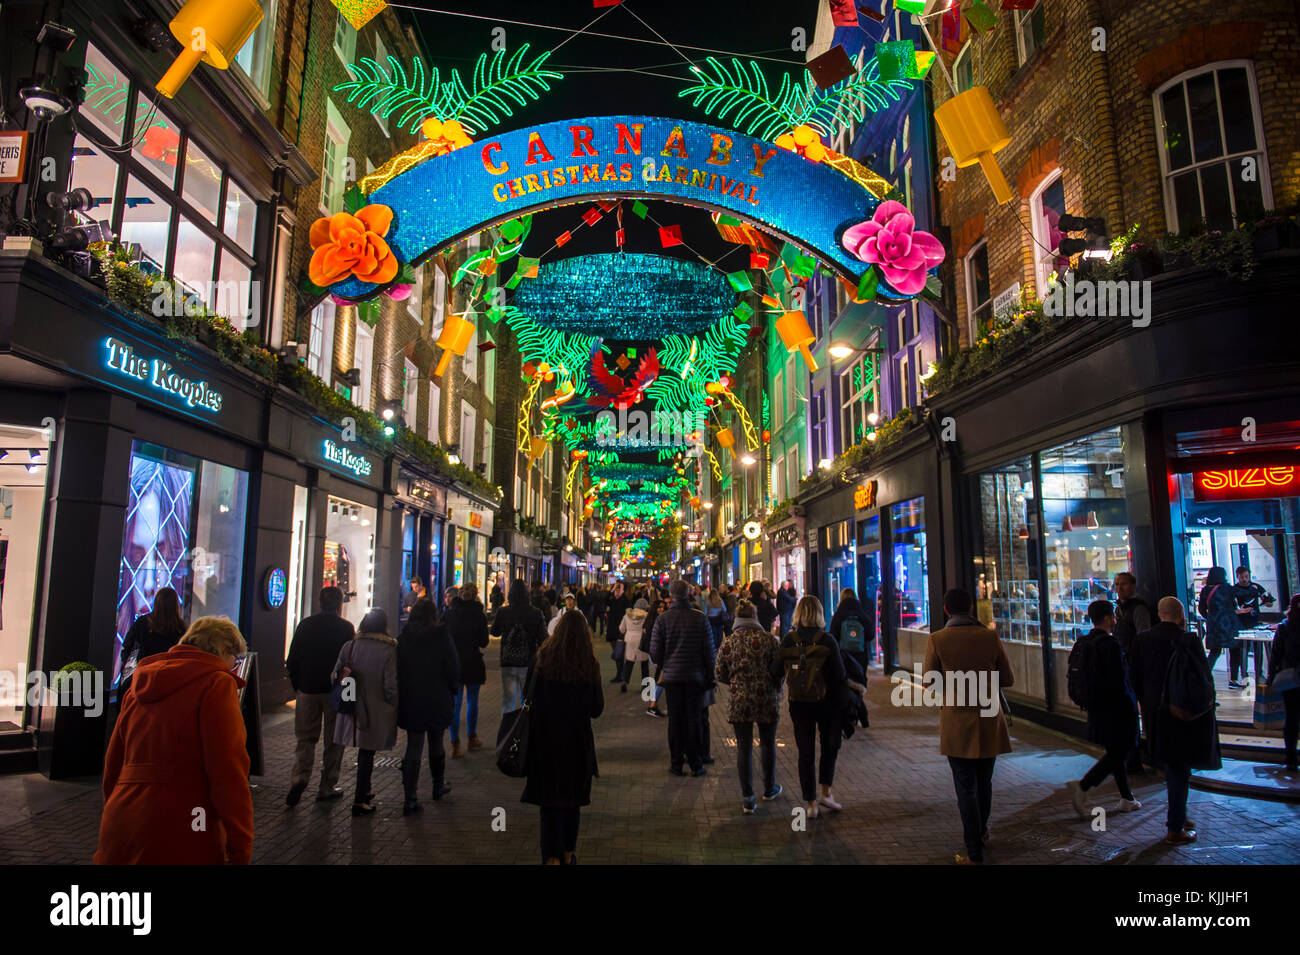 London - November 21, 2017: bunte Weihnachten lichter Carnaby Street im West End Viertel Soho dekorieren. Stockfoto